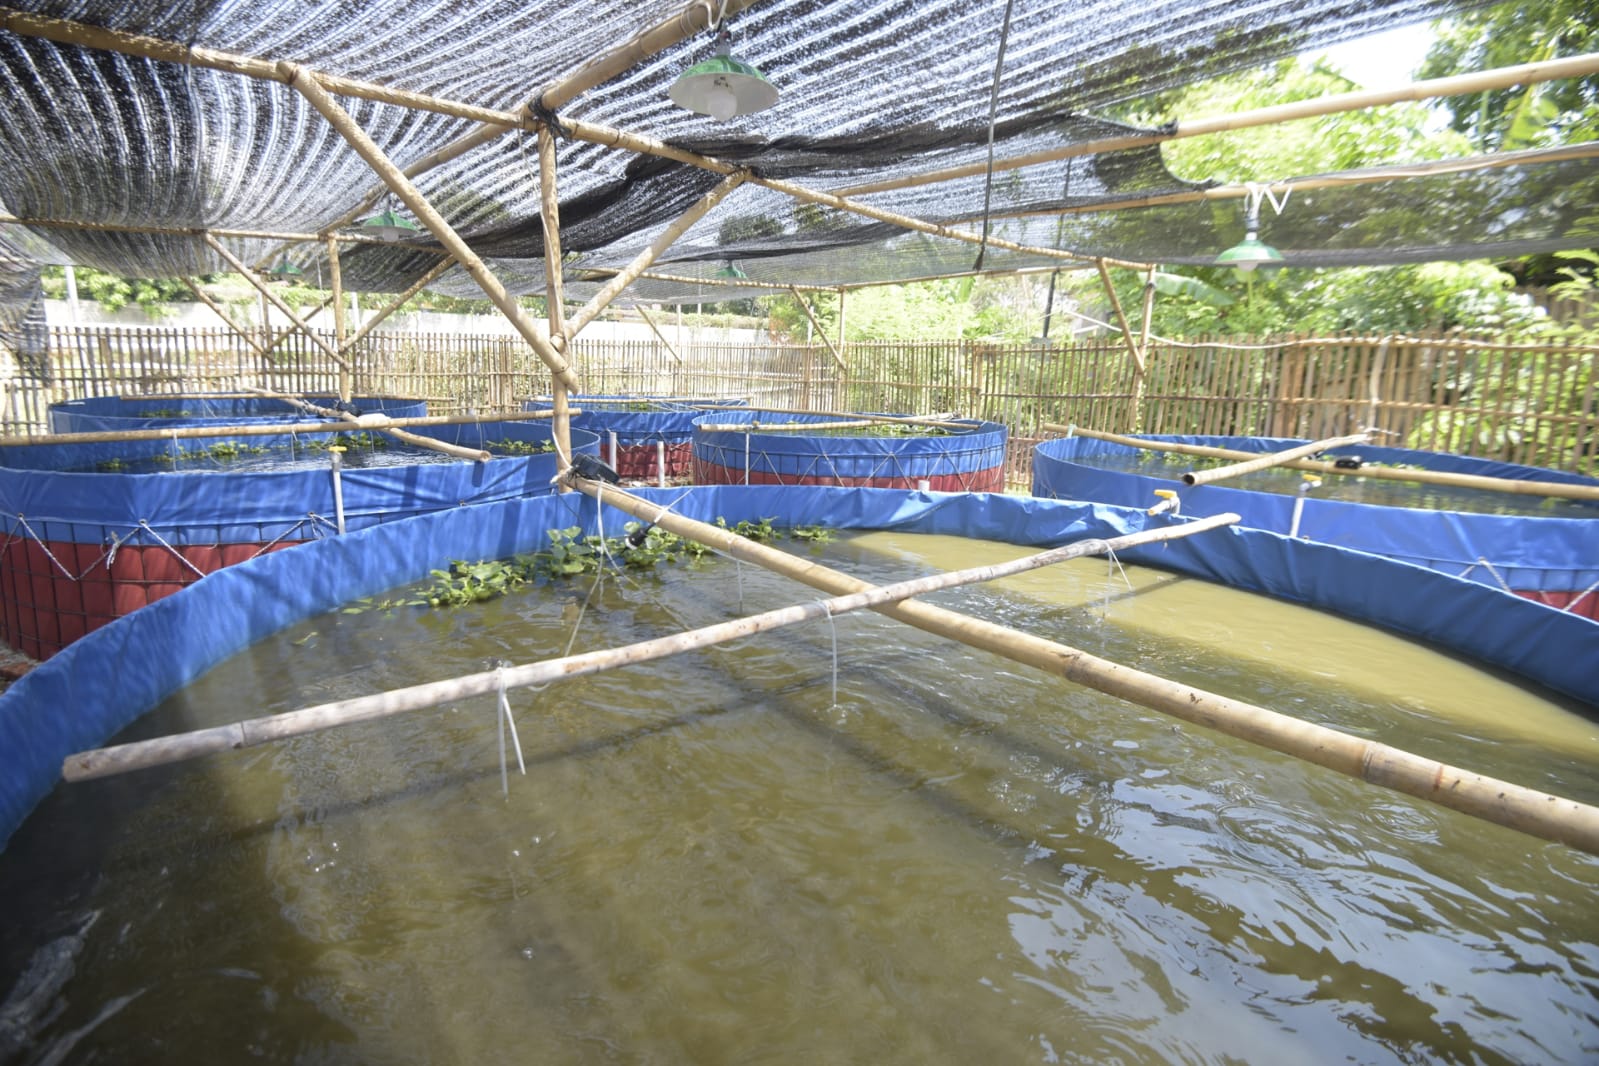 Resmikan Budidaya Ikan di Cirebon, Wagub Uu: Tingkatkan Ekonomi Pesantren Lewat OPOP